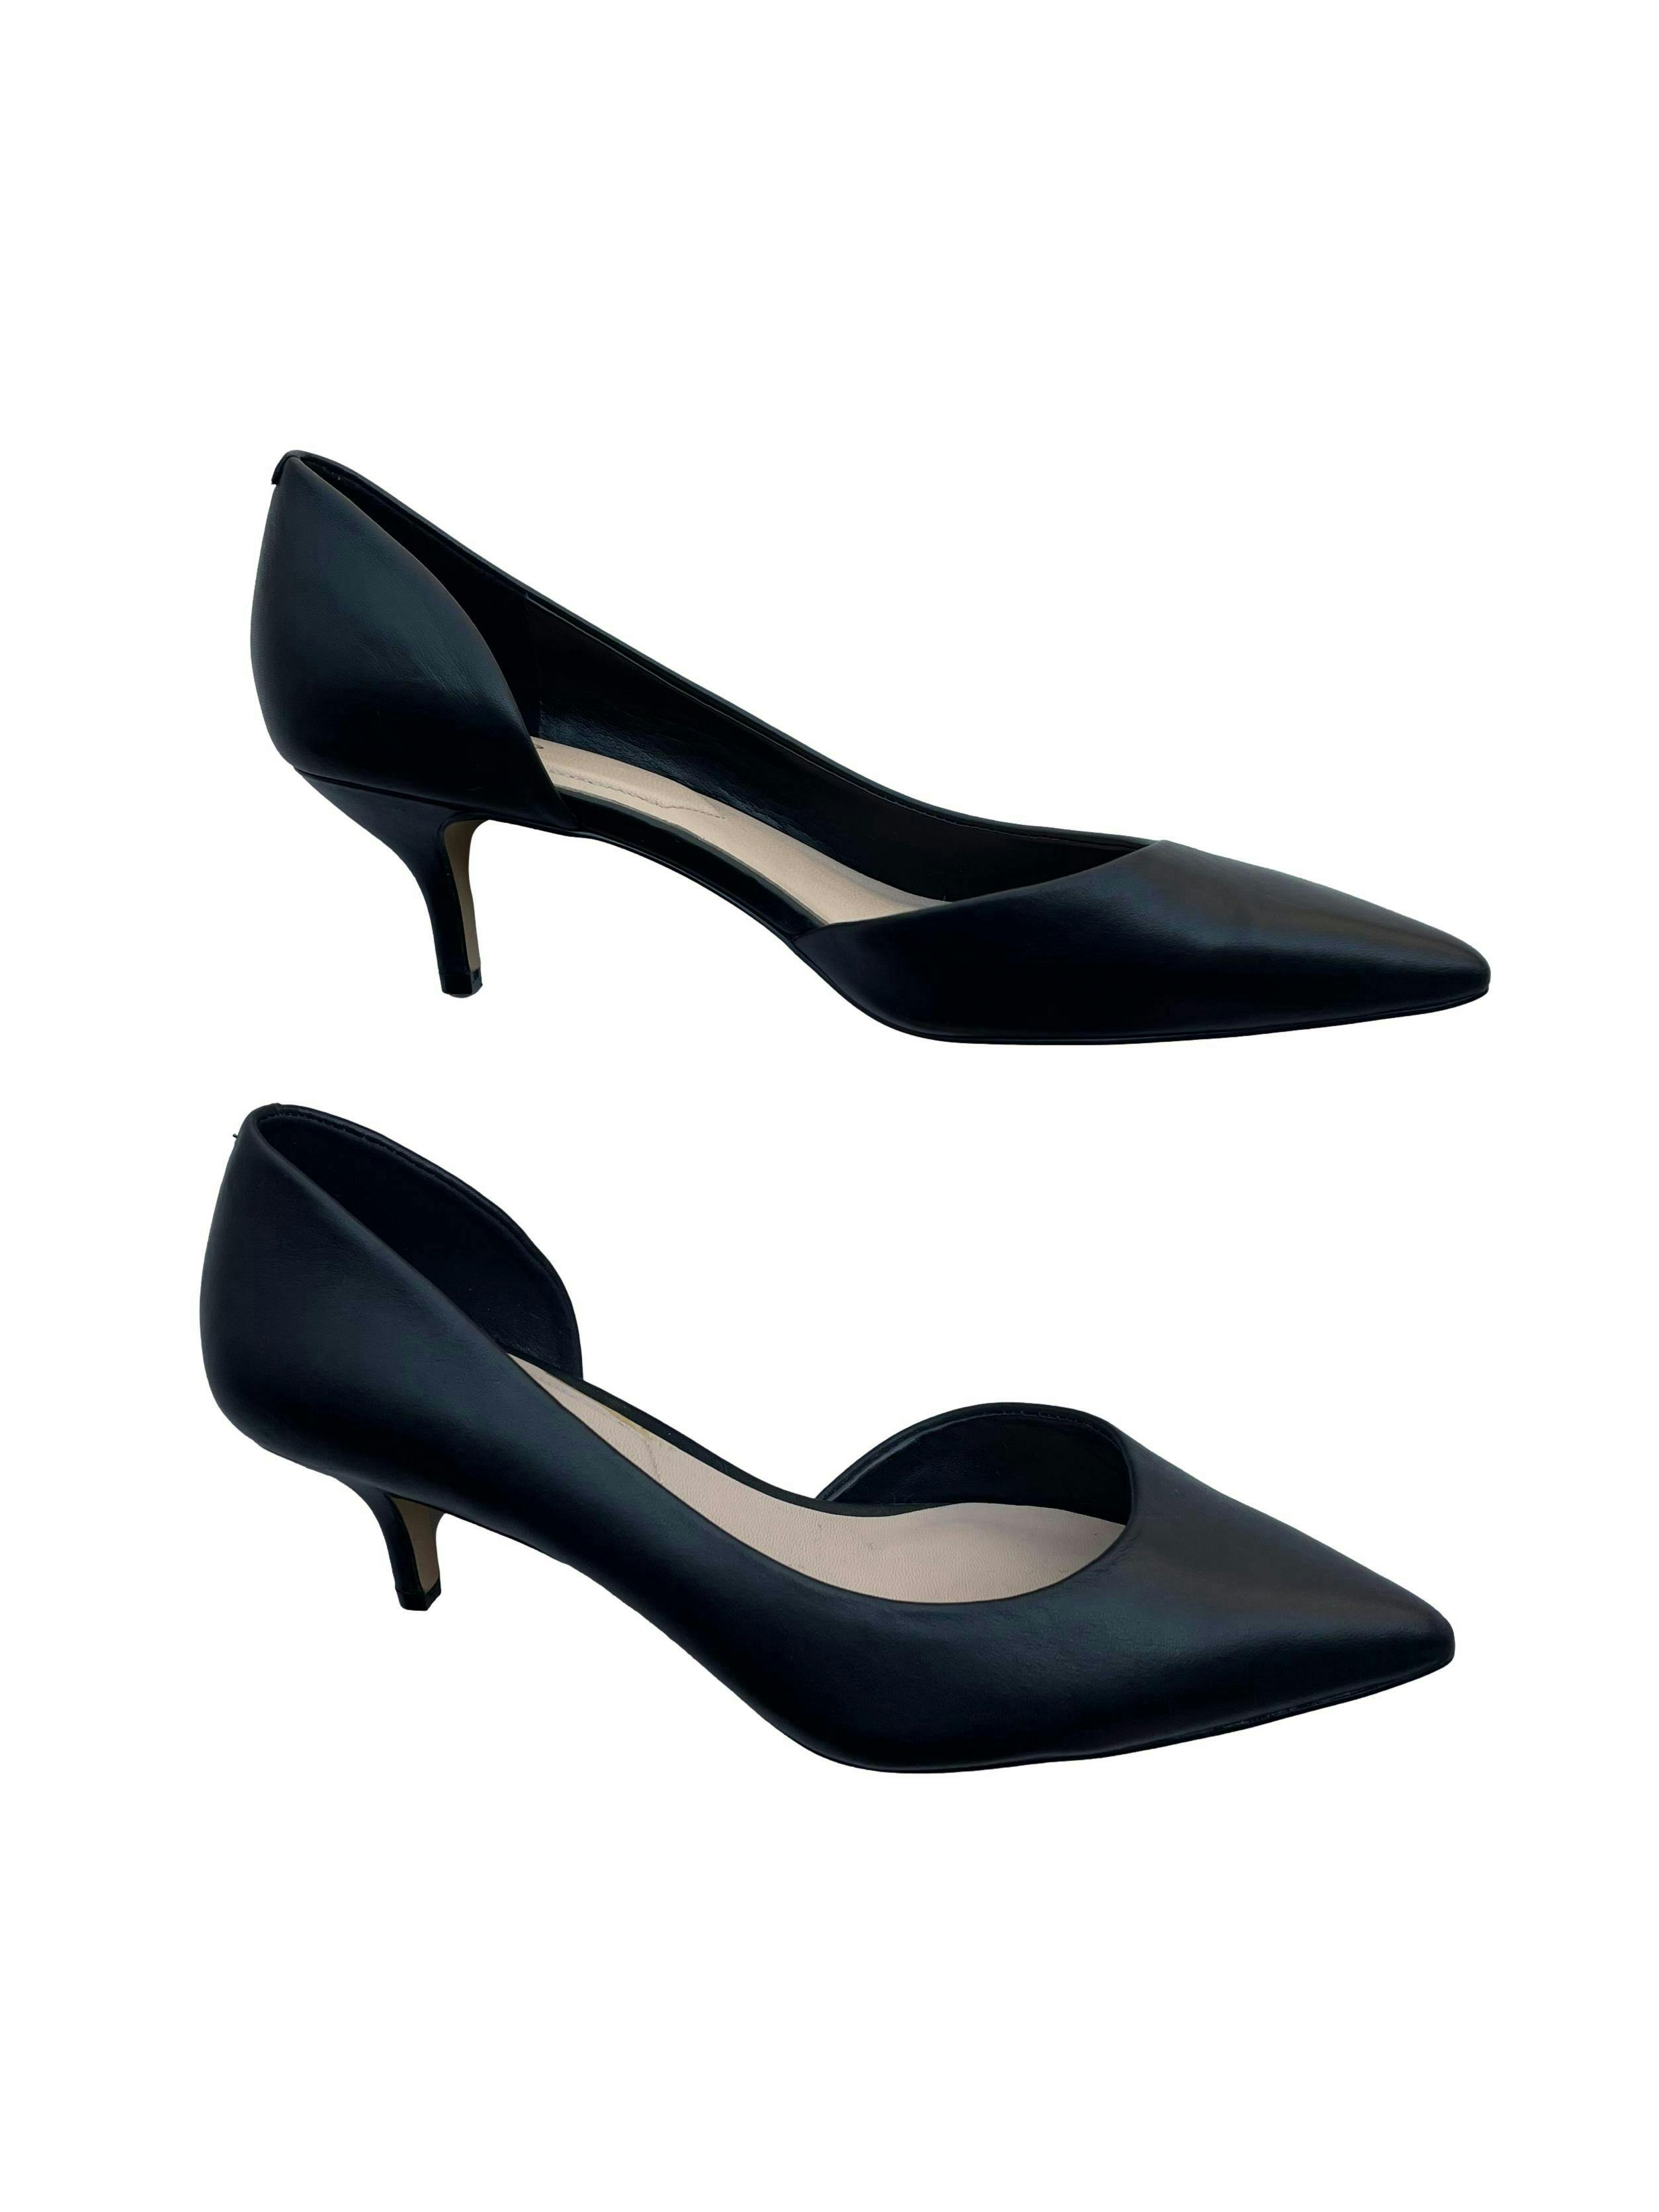 Zapatos Aldo negros en punta, taco 5cm. Estado 9/10. Precio original S/299